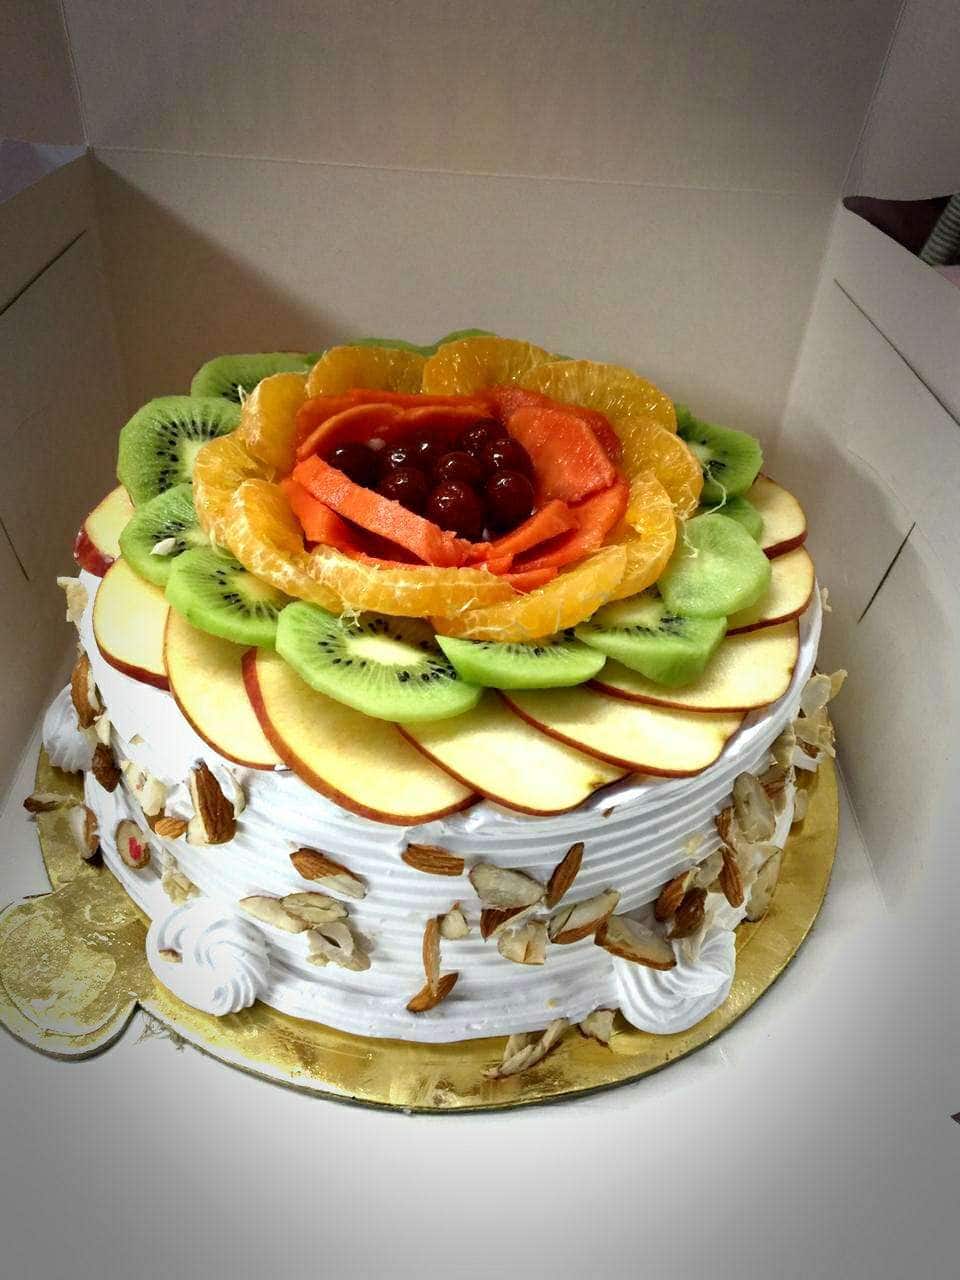 Pin by Puja kangsha Banik on Cake decorating designs | Cake decorating  designs, Homemade cake recipes, Homemade cakes